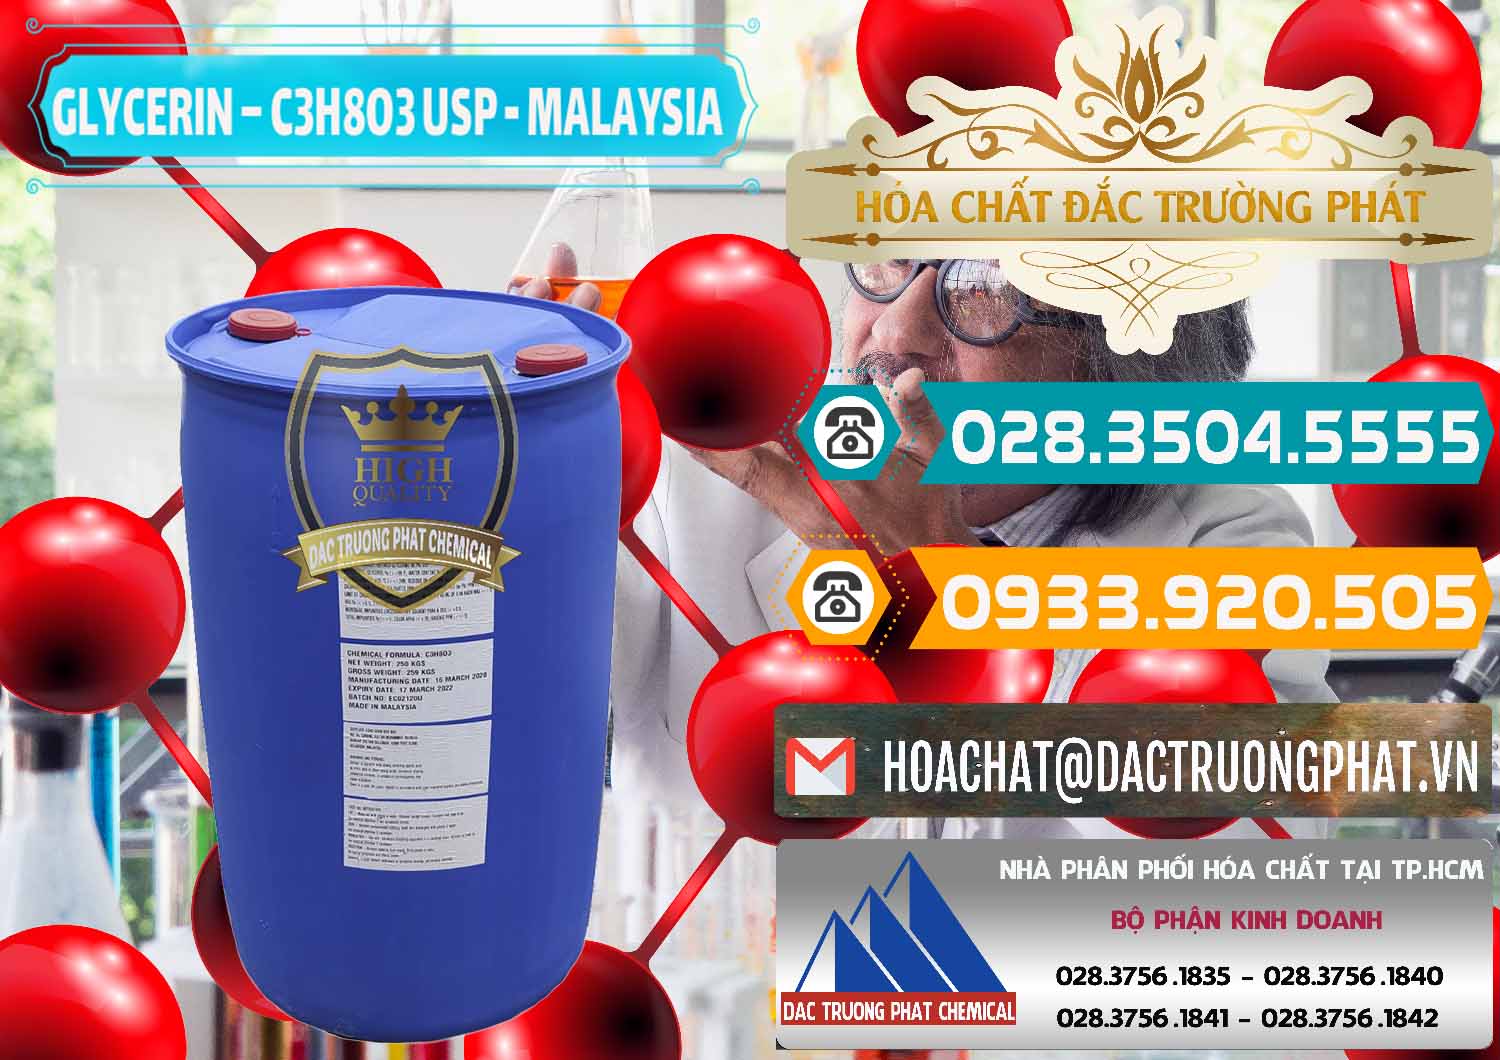 Đơn vị chuyên bán và phân phối Glycerin – C3H8O3 USP Malaysia - 0233 - Chuyên cung cấp và phân phối hóa chất tại TP.HCM - congtyhoachat.vn